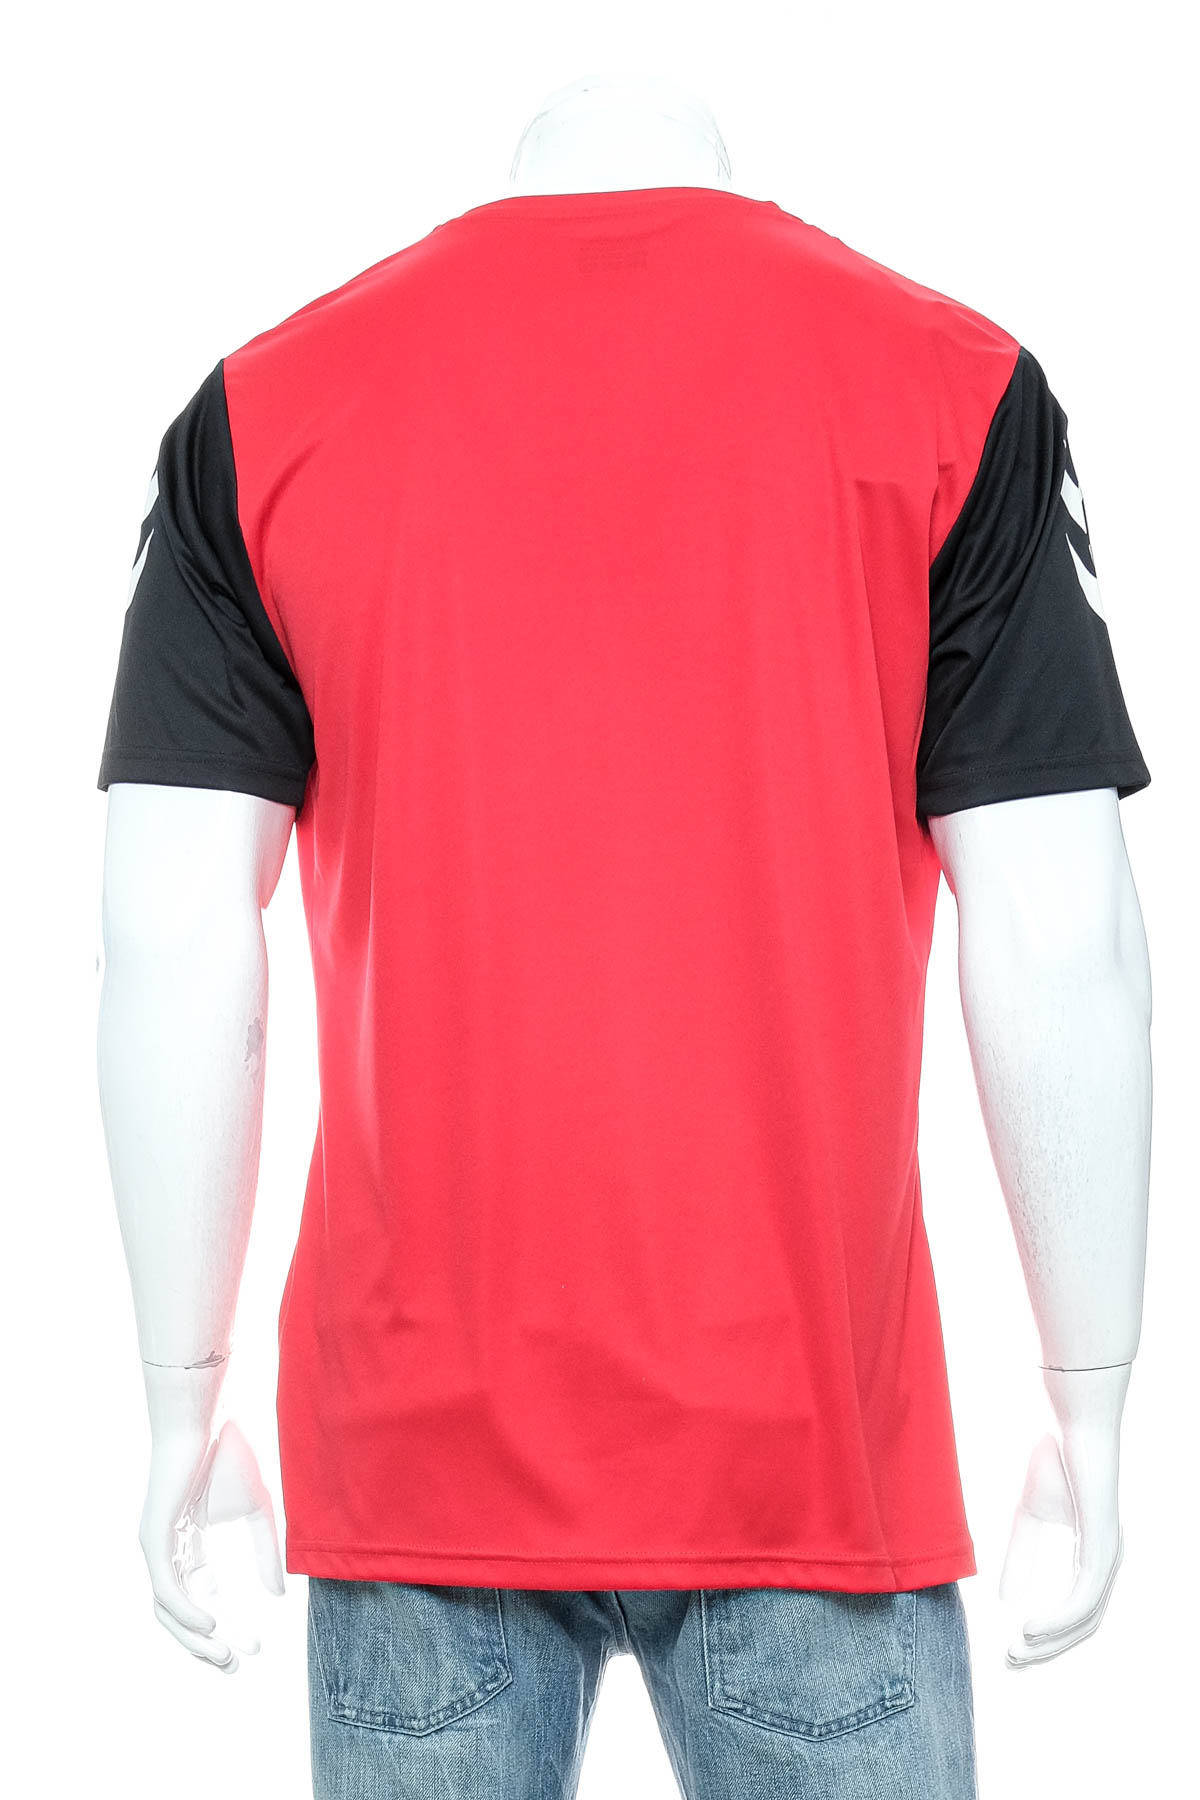 Ανδρικό μπλουζάκι - Hummel - 1